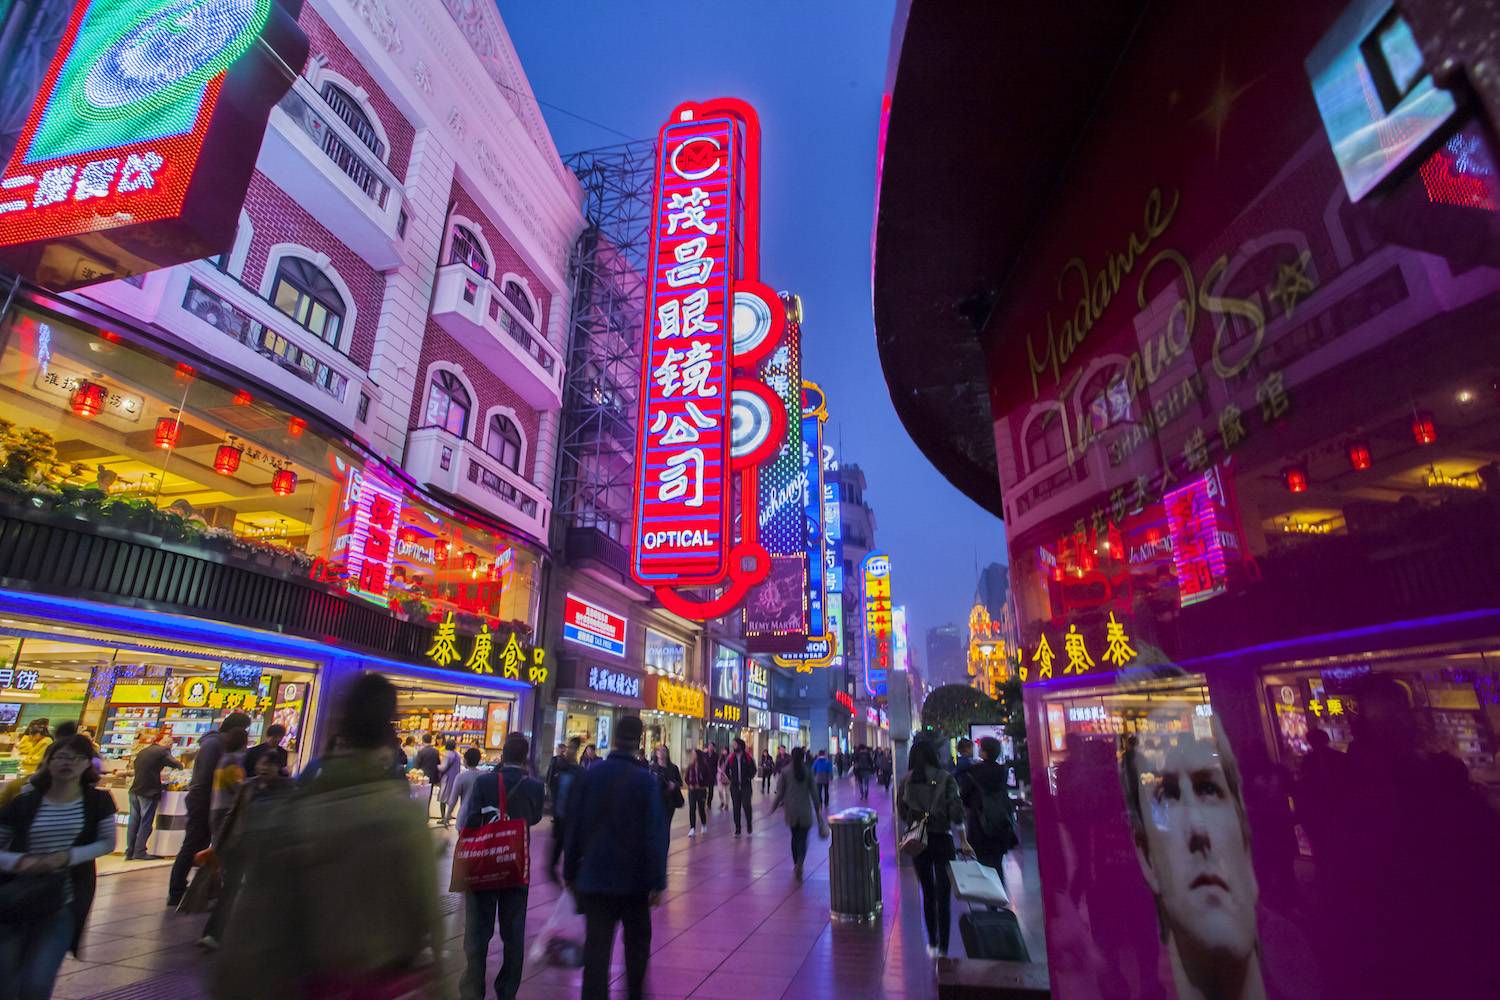 一张团购券“买遍南京路”！南京路步行街变成一个“超级购物中心”了